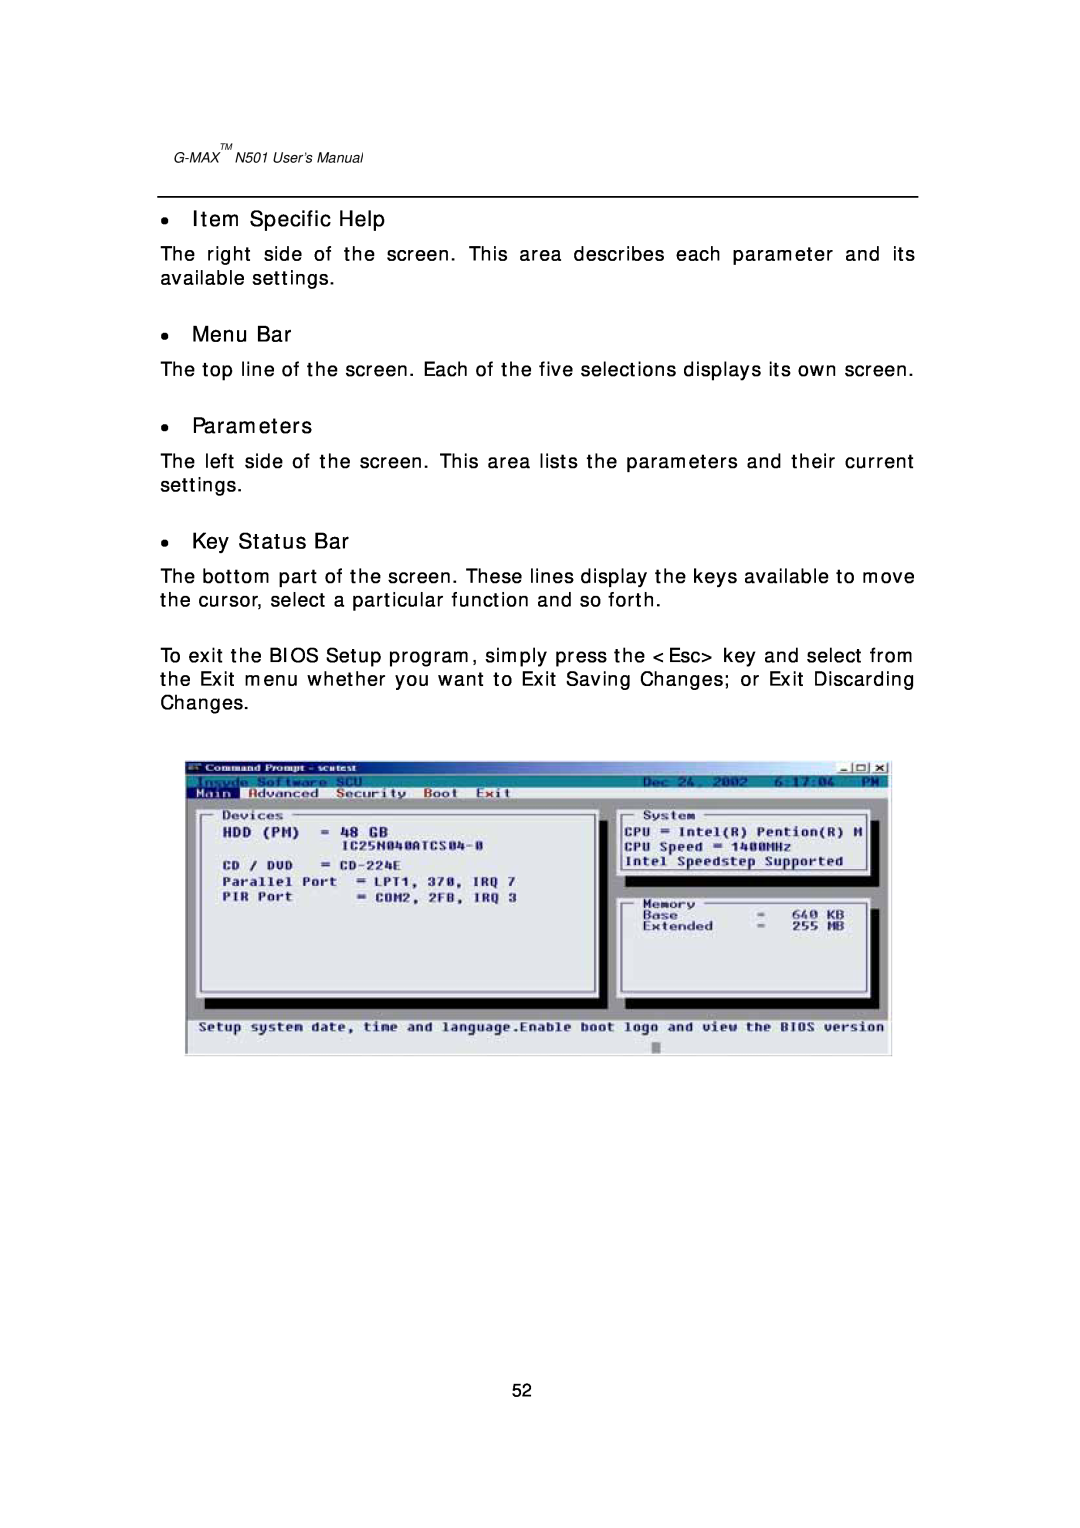 Gigabyte G-MAX N501 user manual Item Specific Help, Menu Bar, Parameters, Key Status Bar 